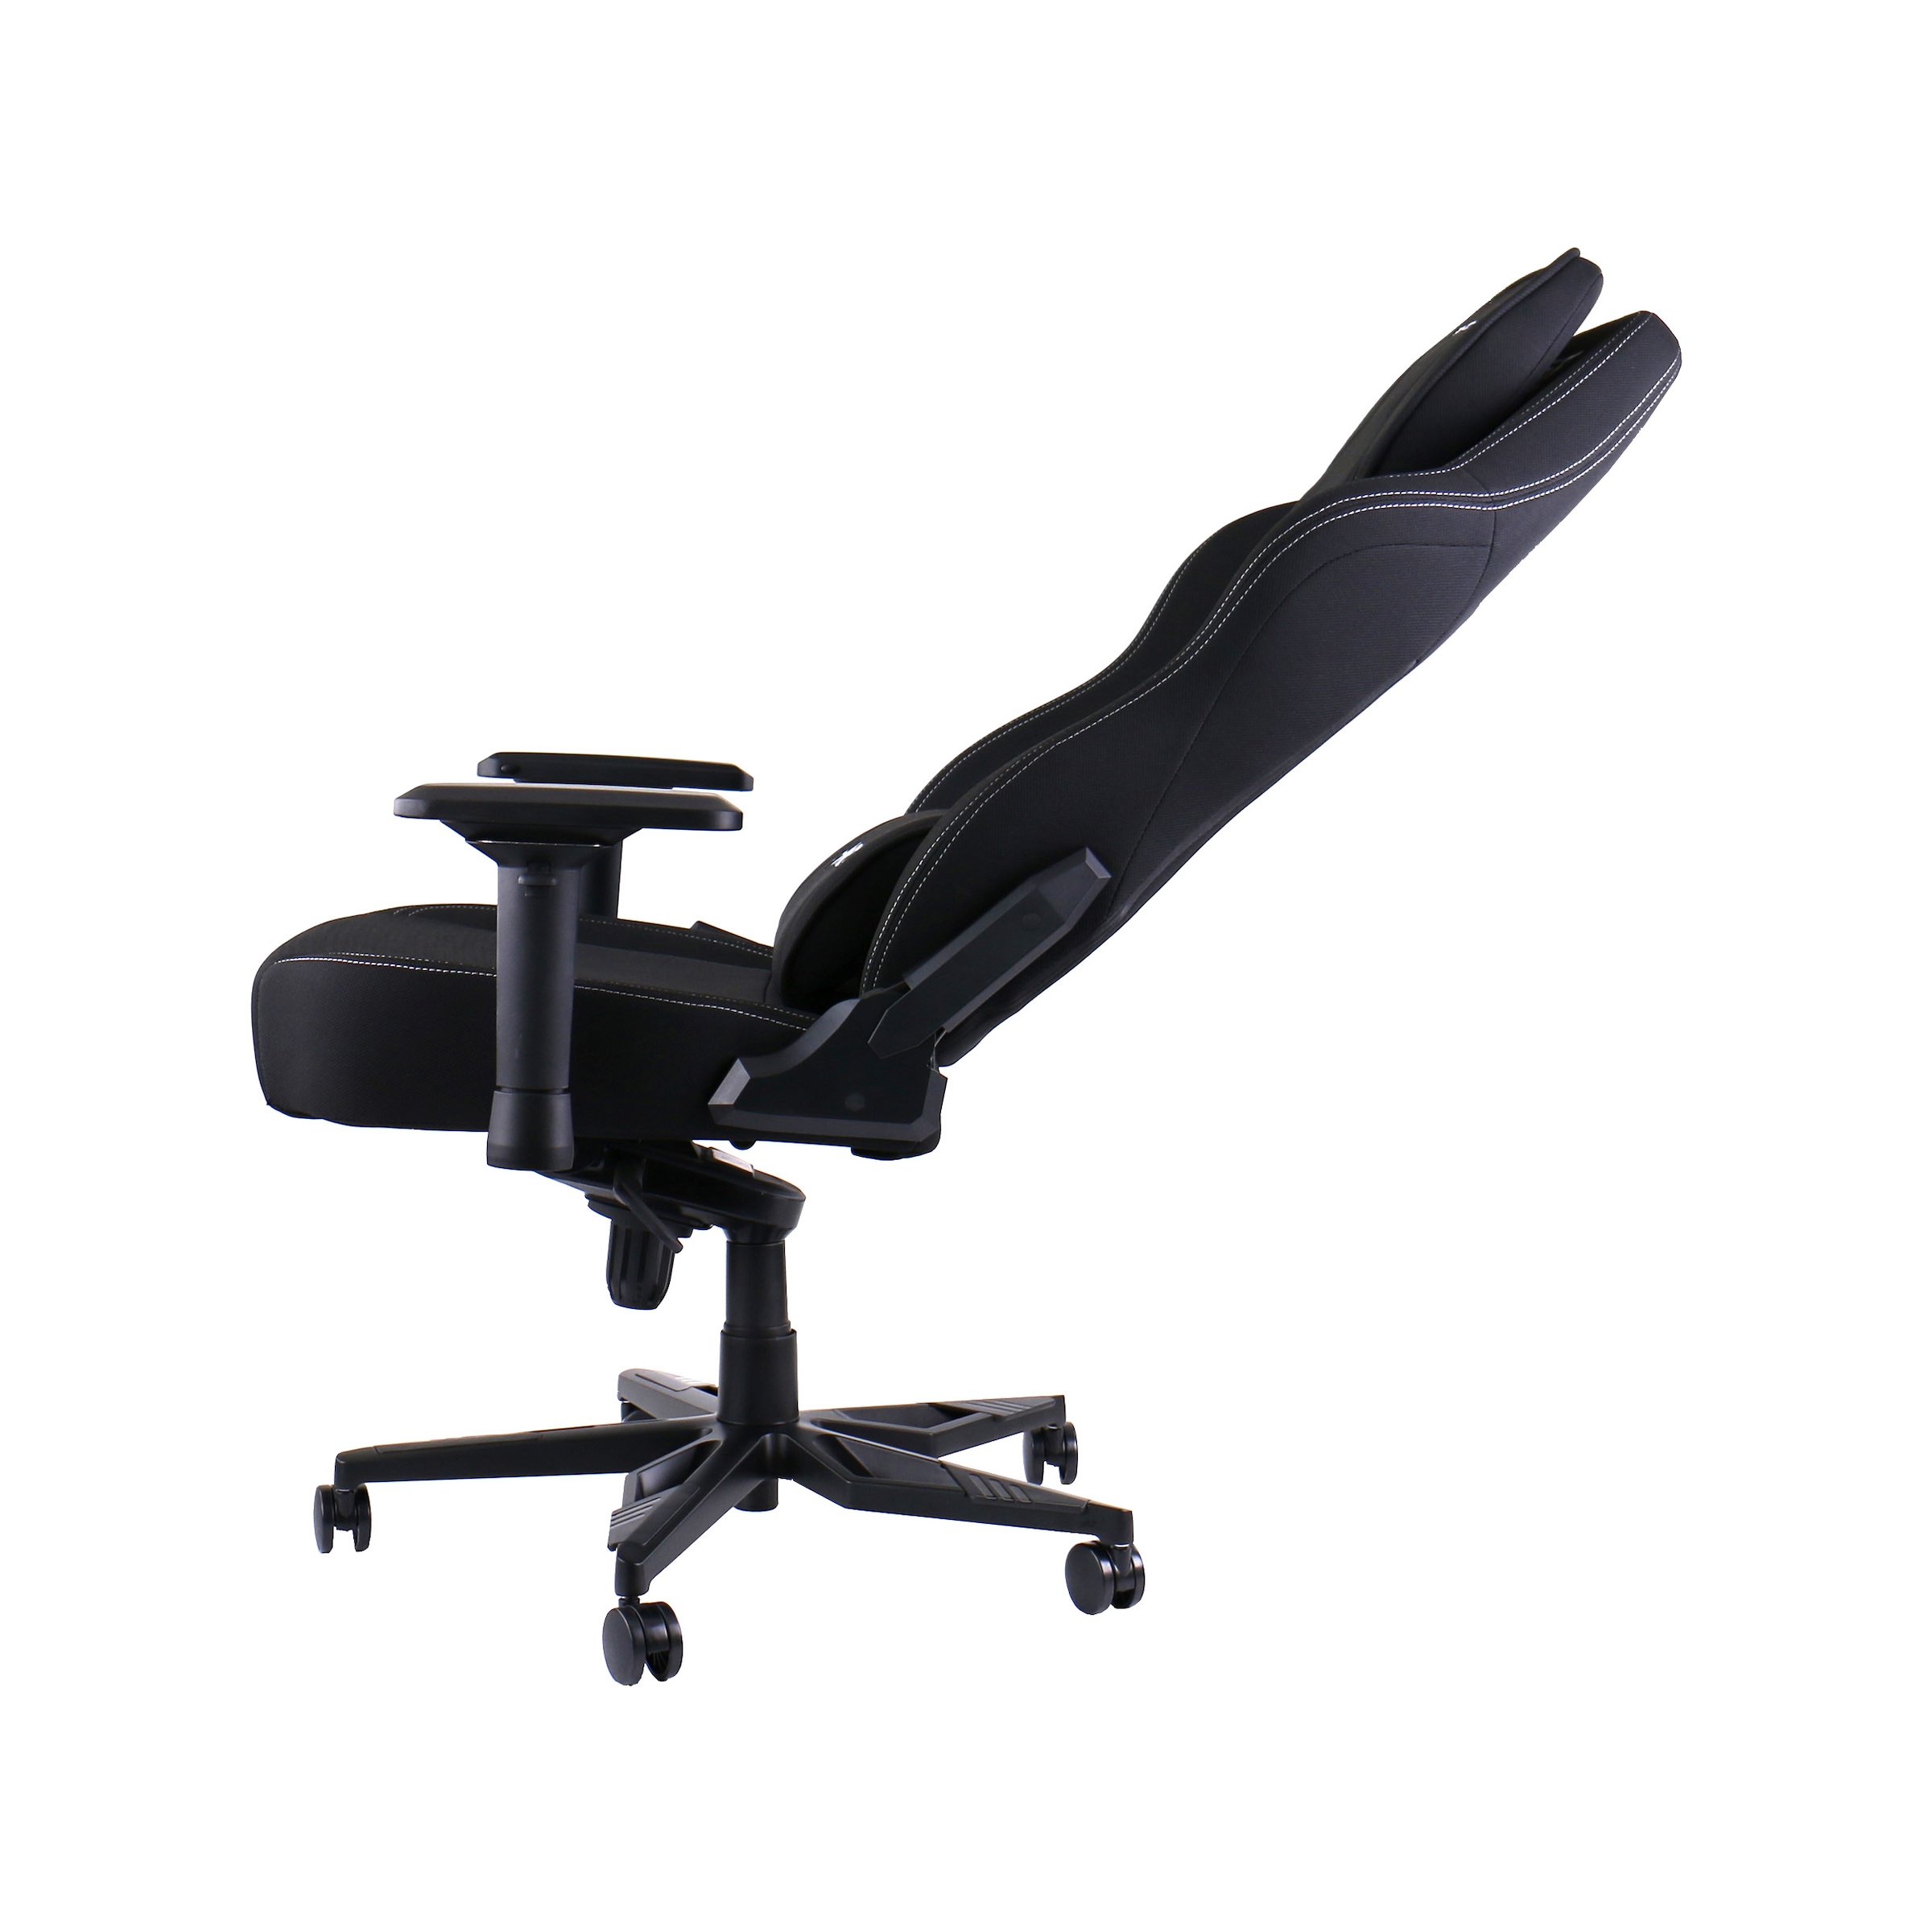 Hyrican Gaming-Stuhl »Striker "Runner" ergonomischer Gamingstuhl, Schreibtischstuhl«, (Set), Stoff, inklusive Bodenschutzmatte 1100x1100x2mm